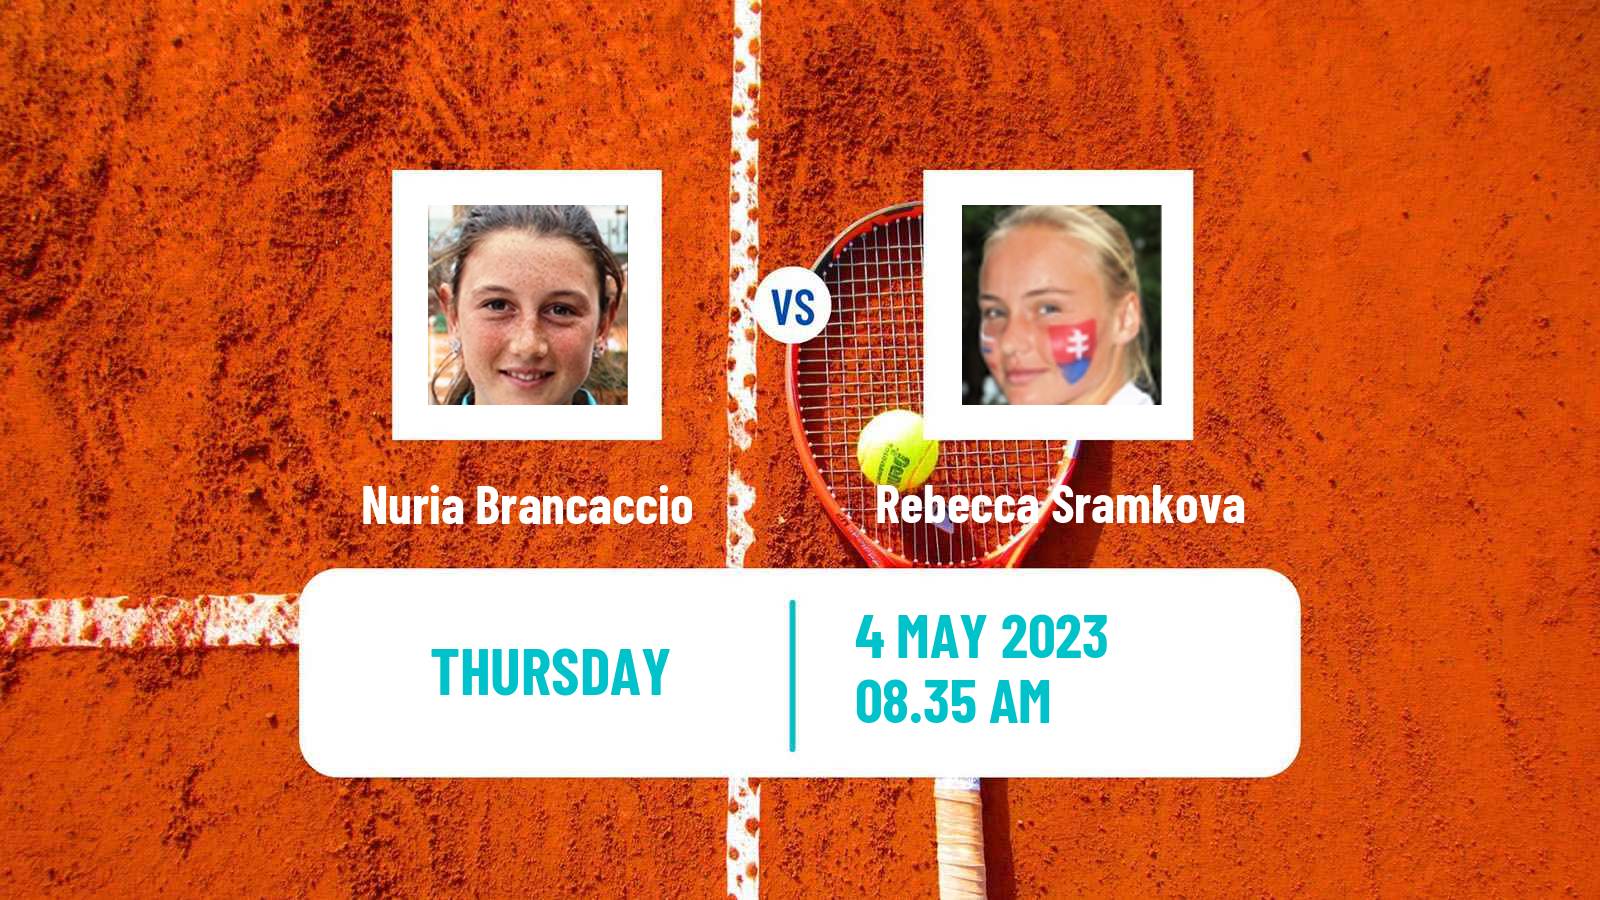 Tennis ITF Tournaments Nuria Brancaccio - Rebecca Sramkova